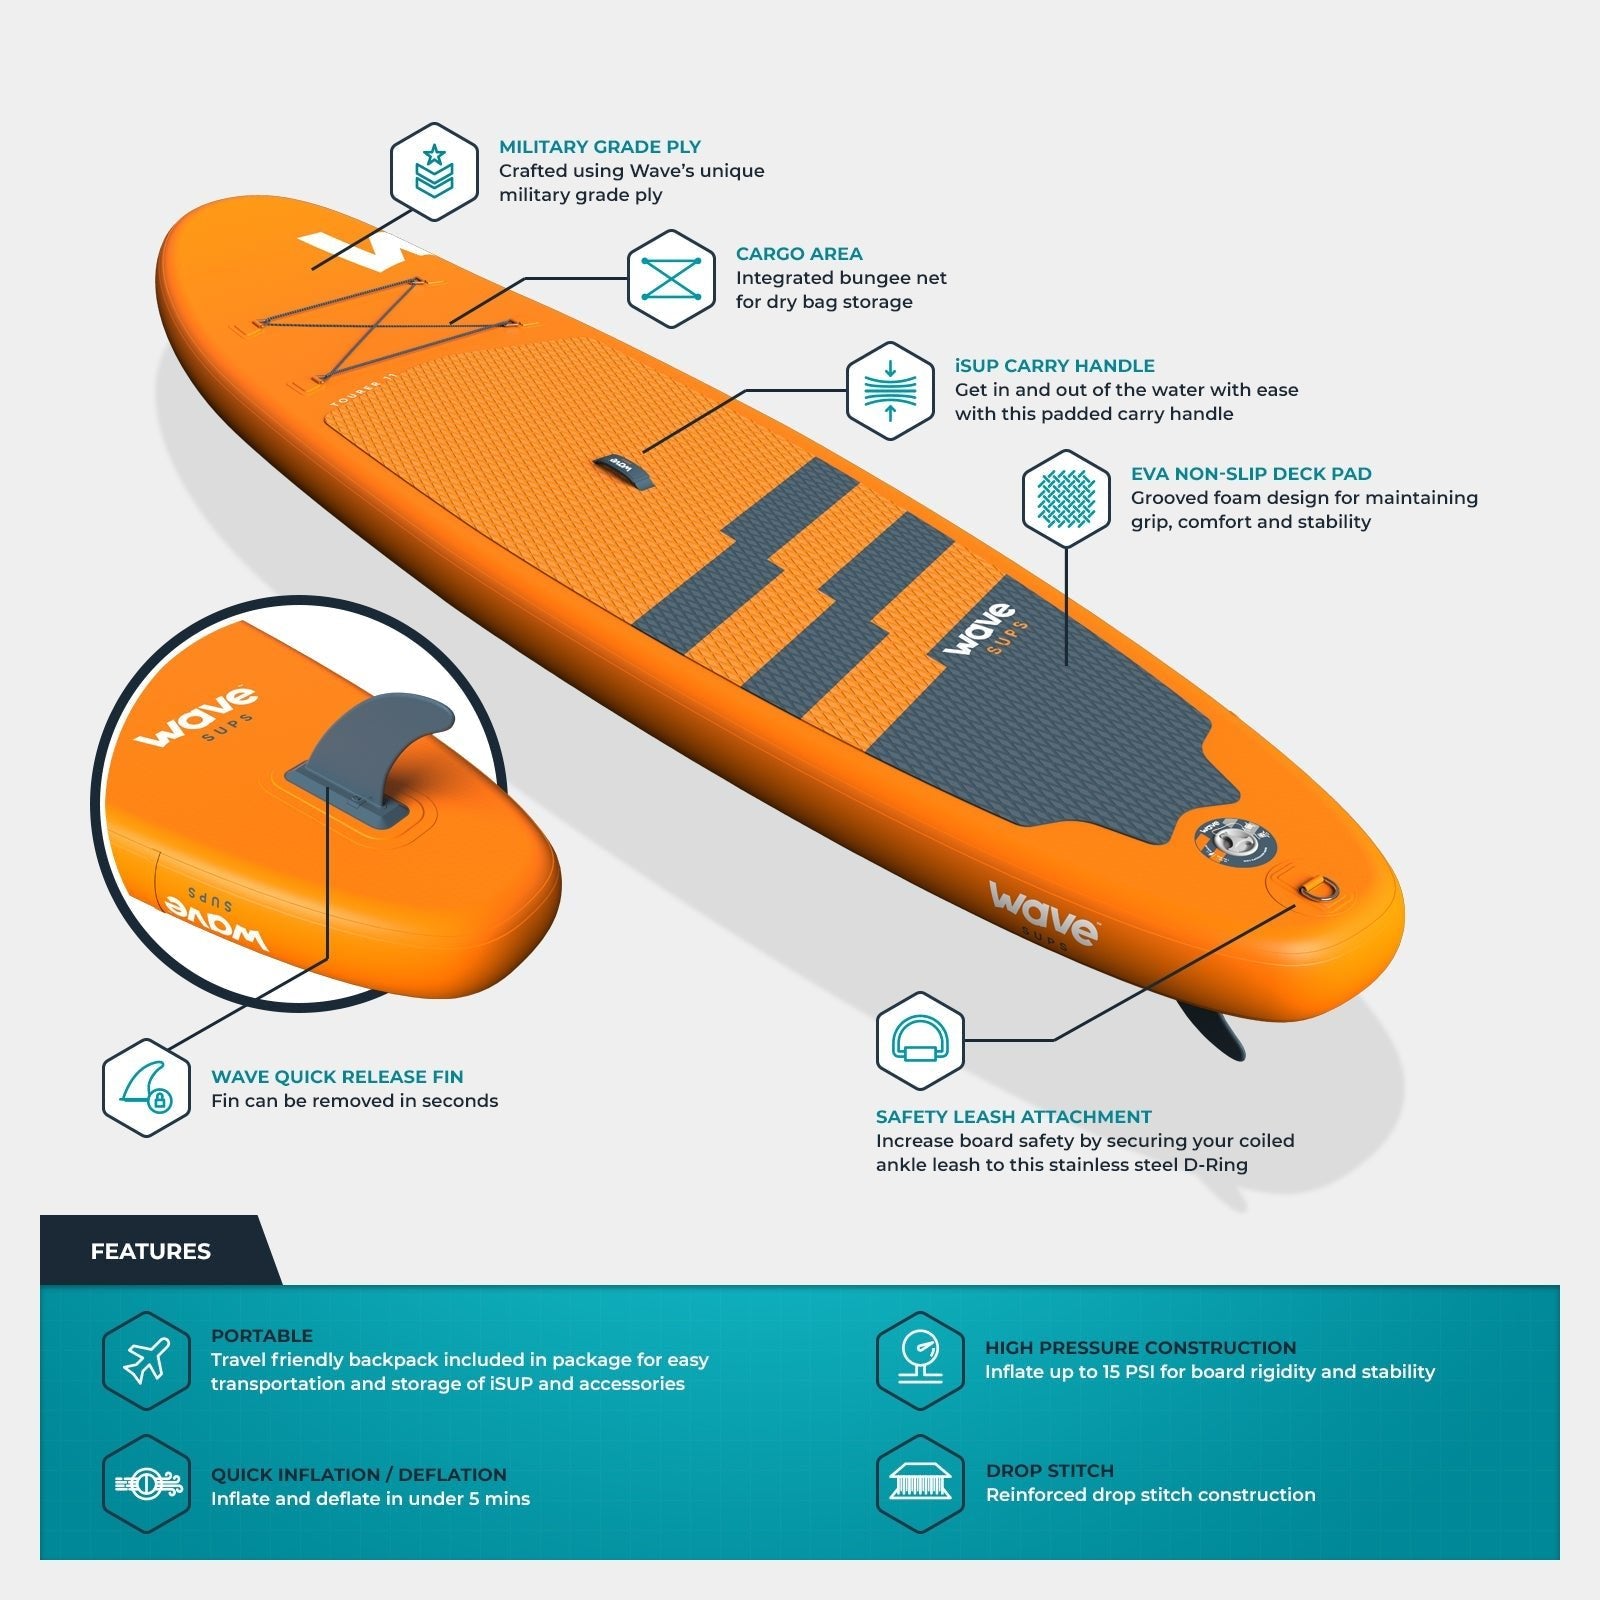 Wave Tourer SUP Package | Orange Stand Up Inflatable Paddleboard 10ft/11ft - Wave Spas UK